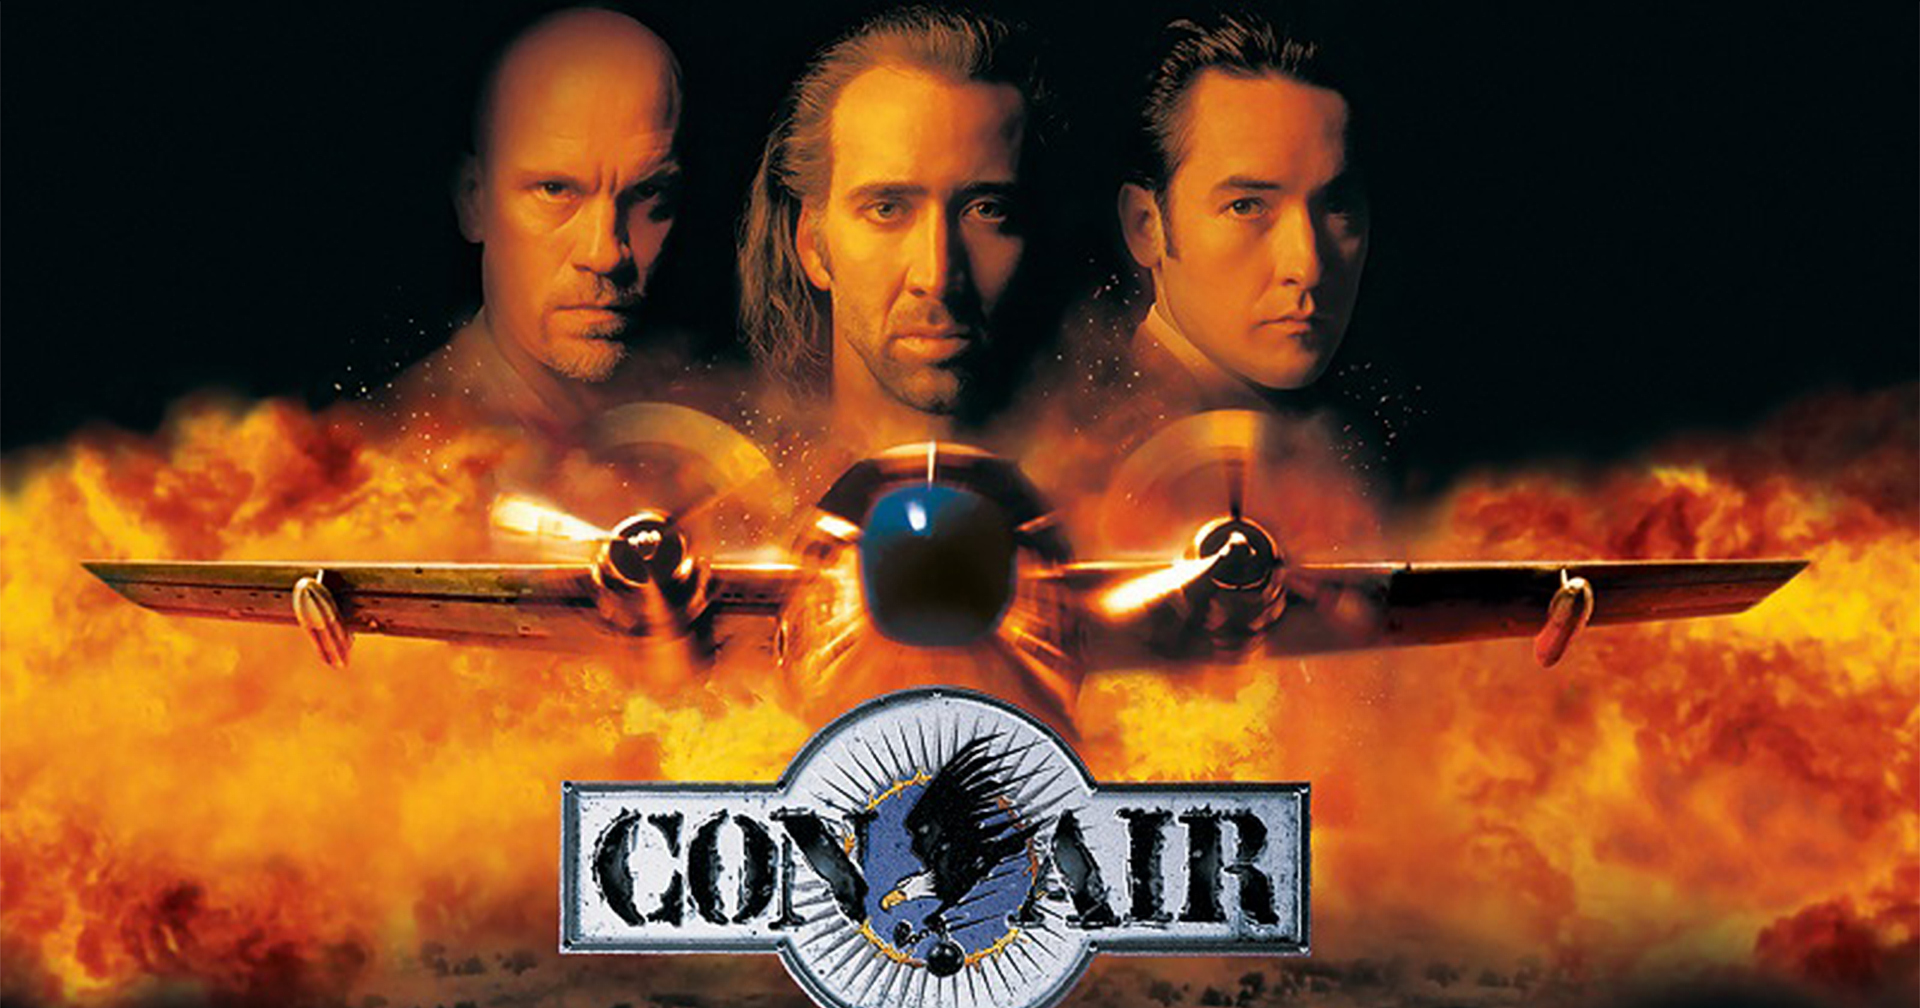 25 ปี Con Air และเหตุผลที่ยังคงเป็นหนึ่งในหนังแอ็กชันยอดเยี่ยมแห่งยุค 90s ที่ครองใจผู้ชมมาได้จนทุกวันนี้